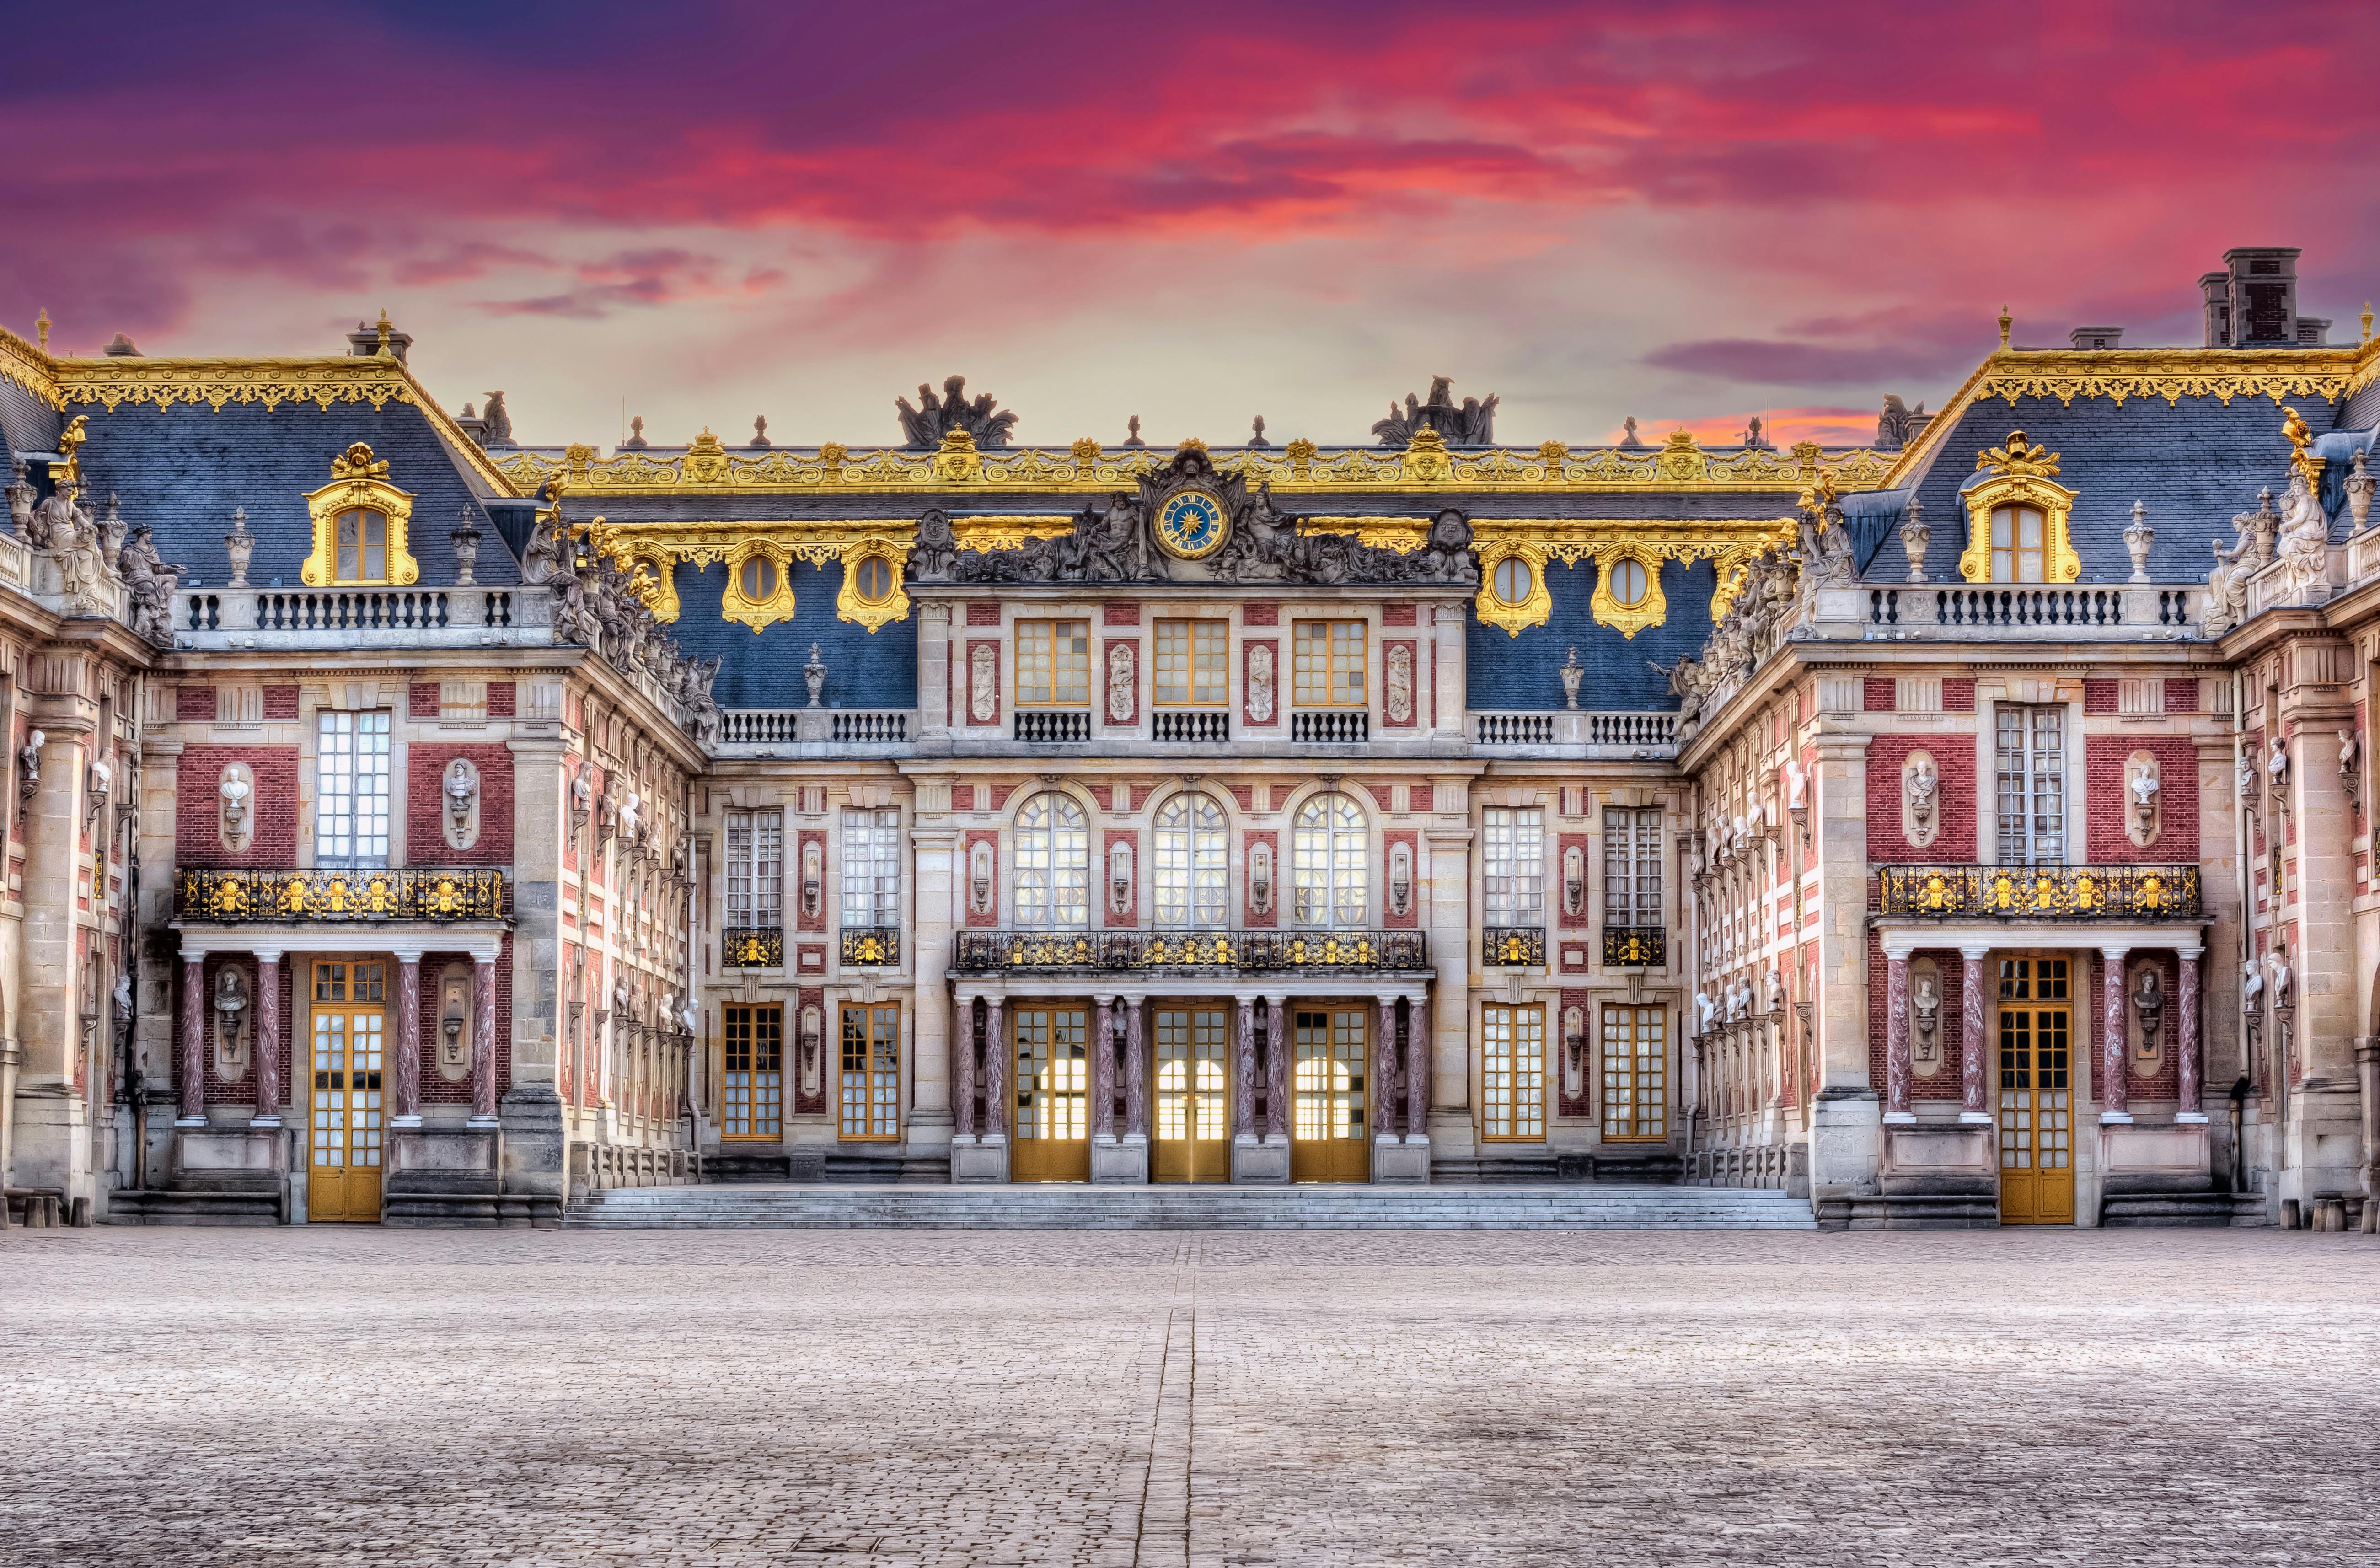 Rondleiding door het Paleis van Versailles vanuit Parijs inclusief tuinenshows